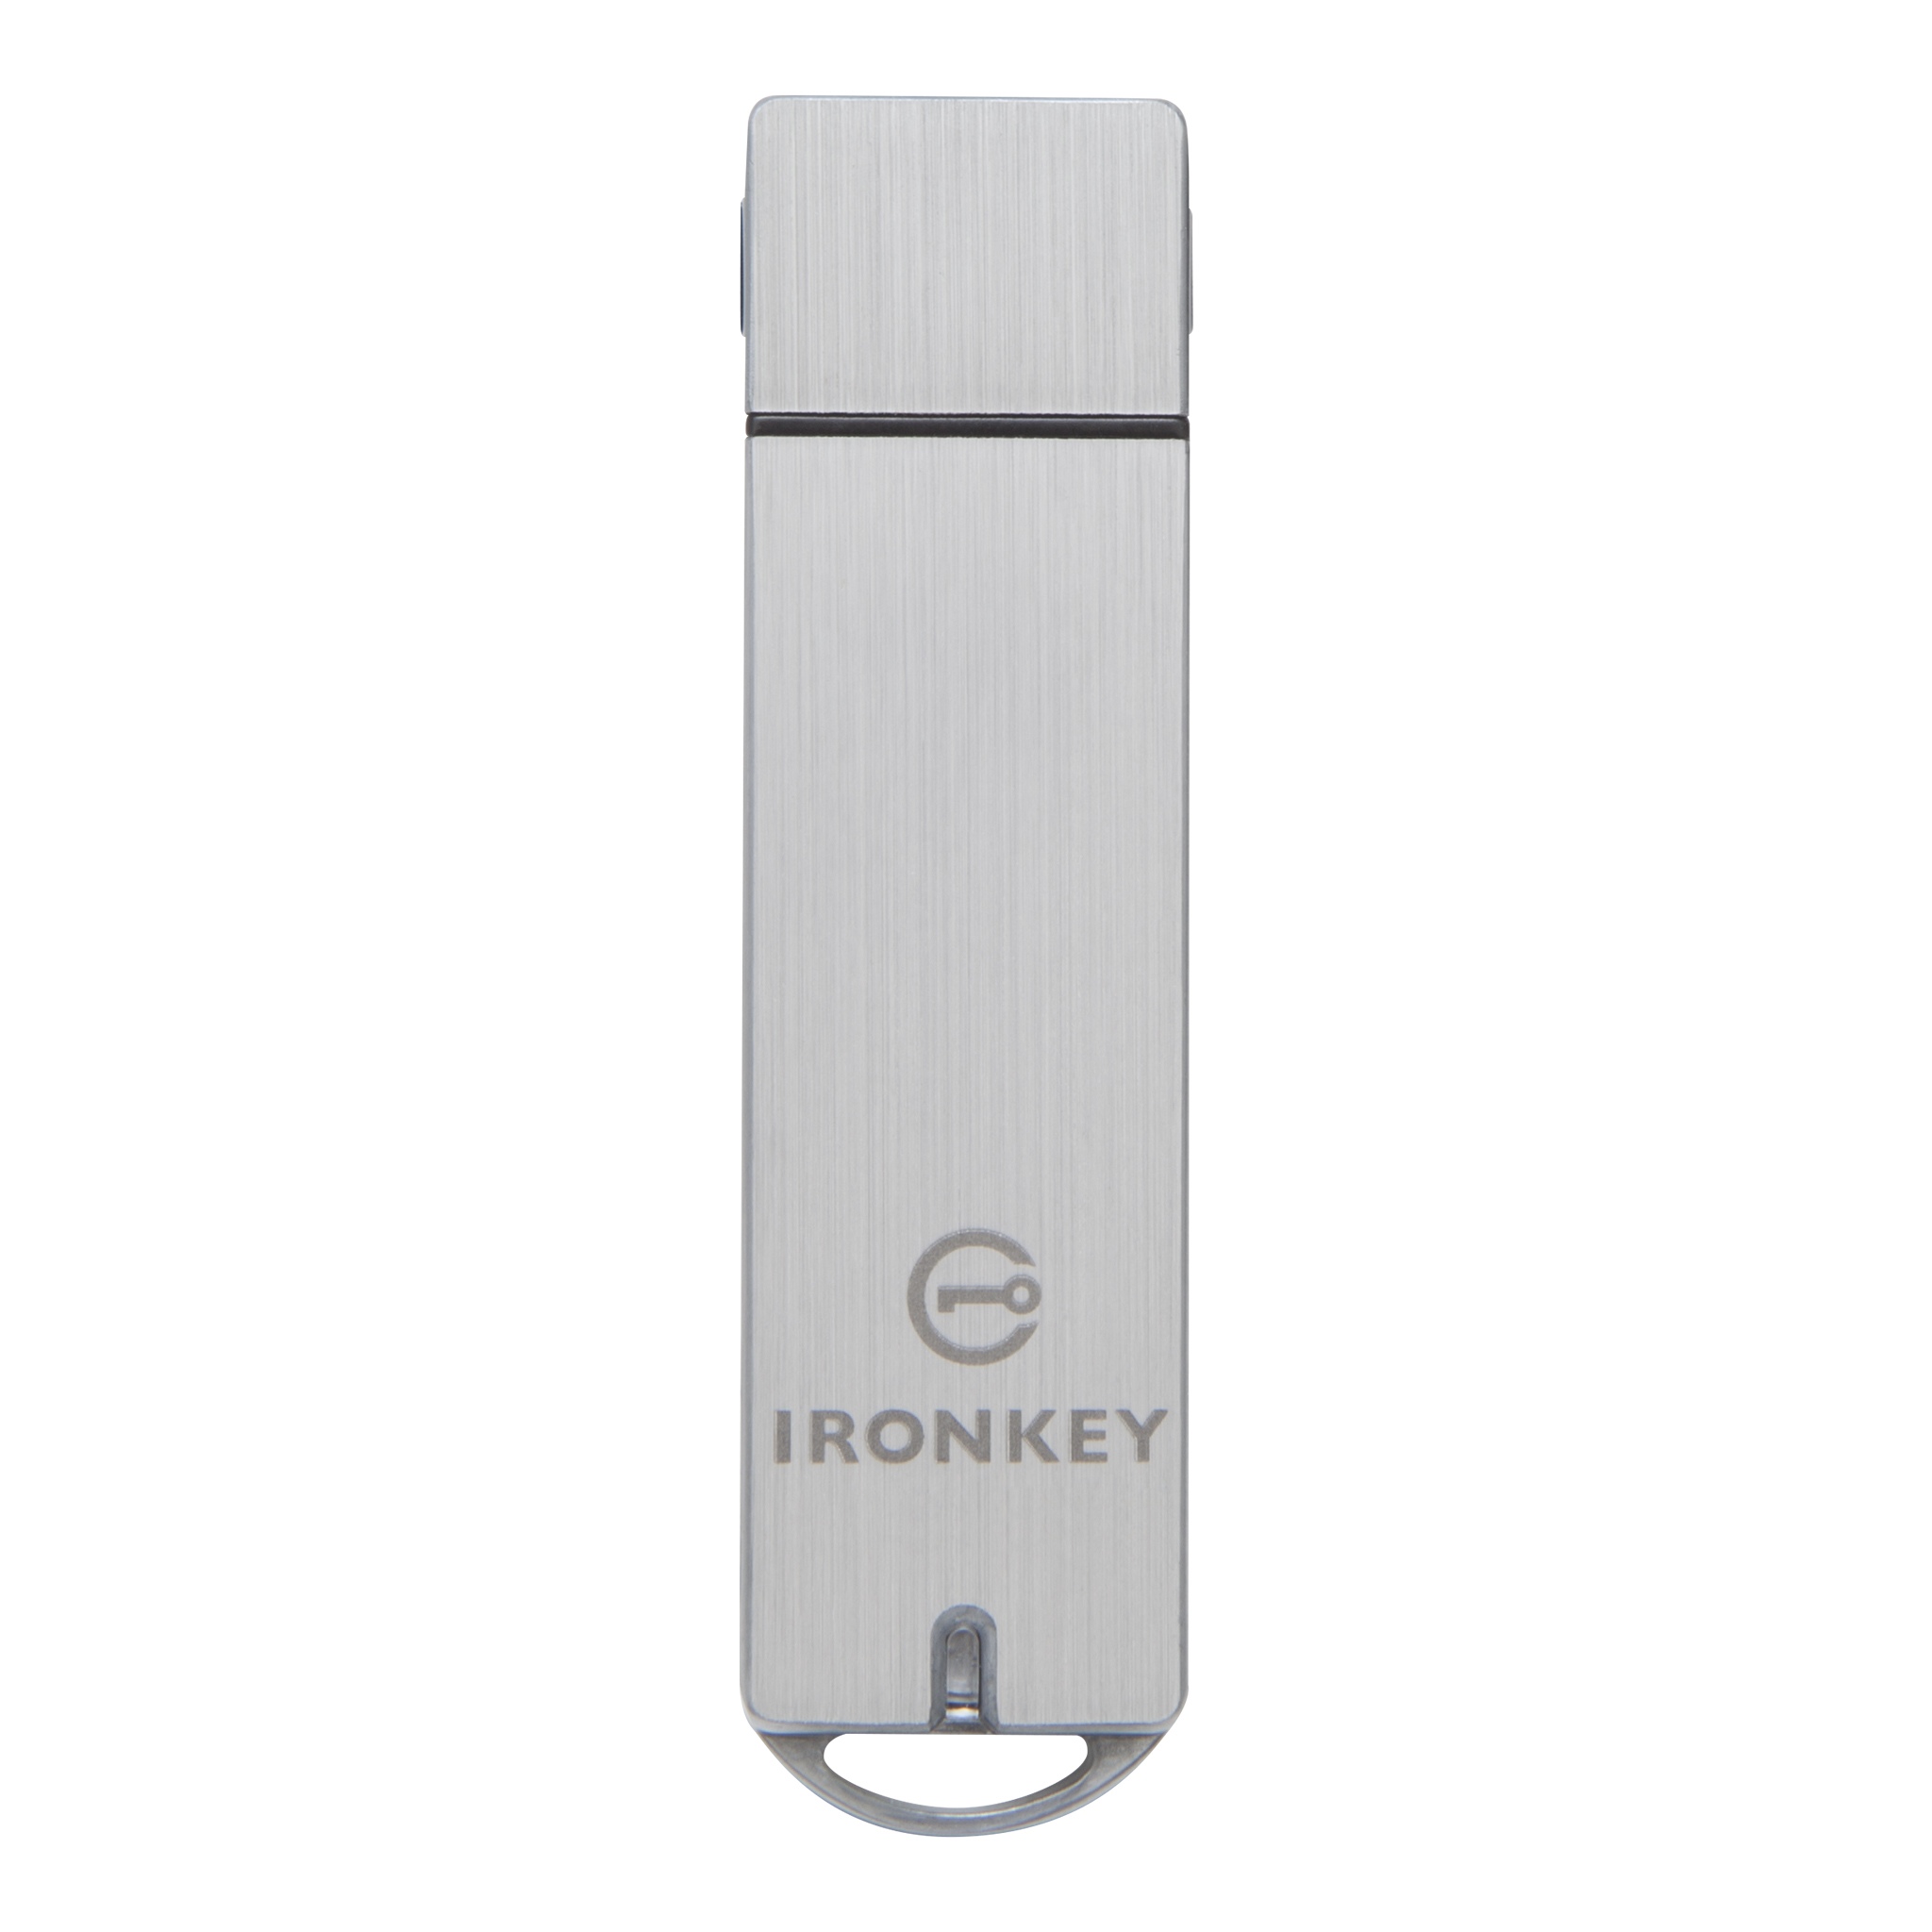 オンデバイスの Cryptochip 搭載の IronKey S1000 USB ドライブ - 4GB